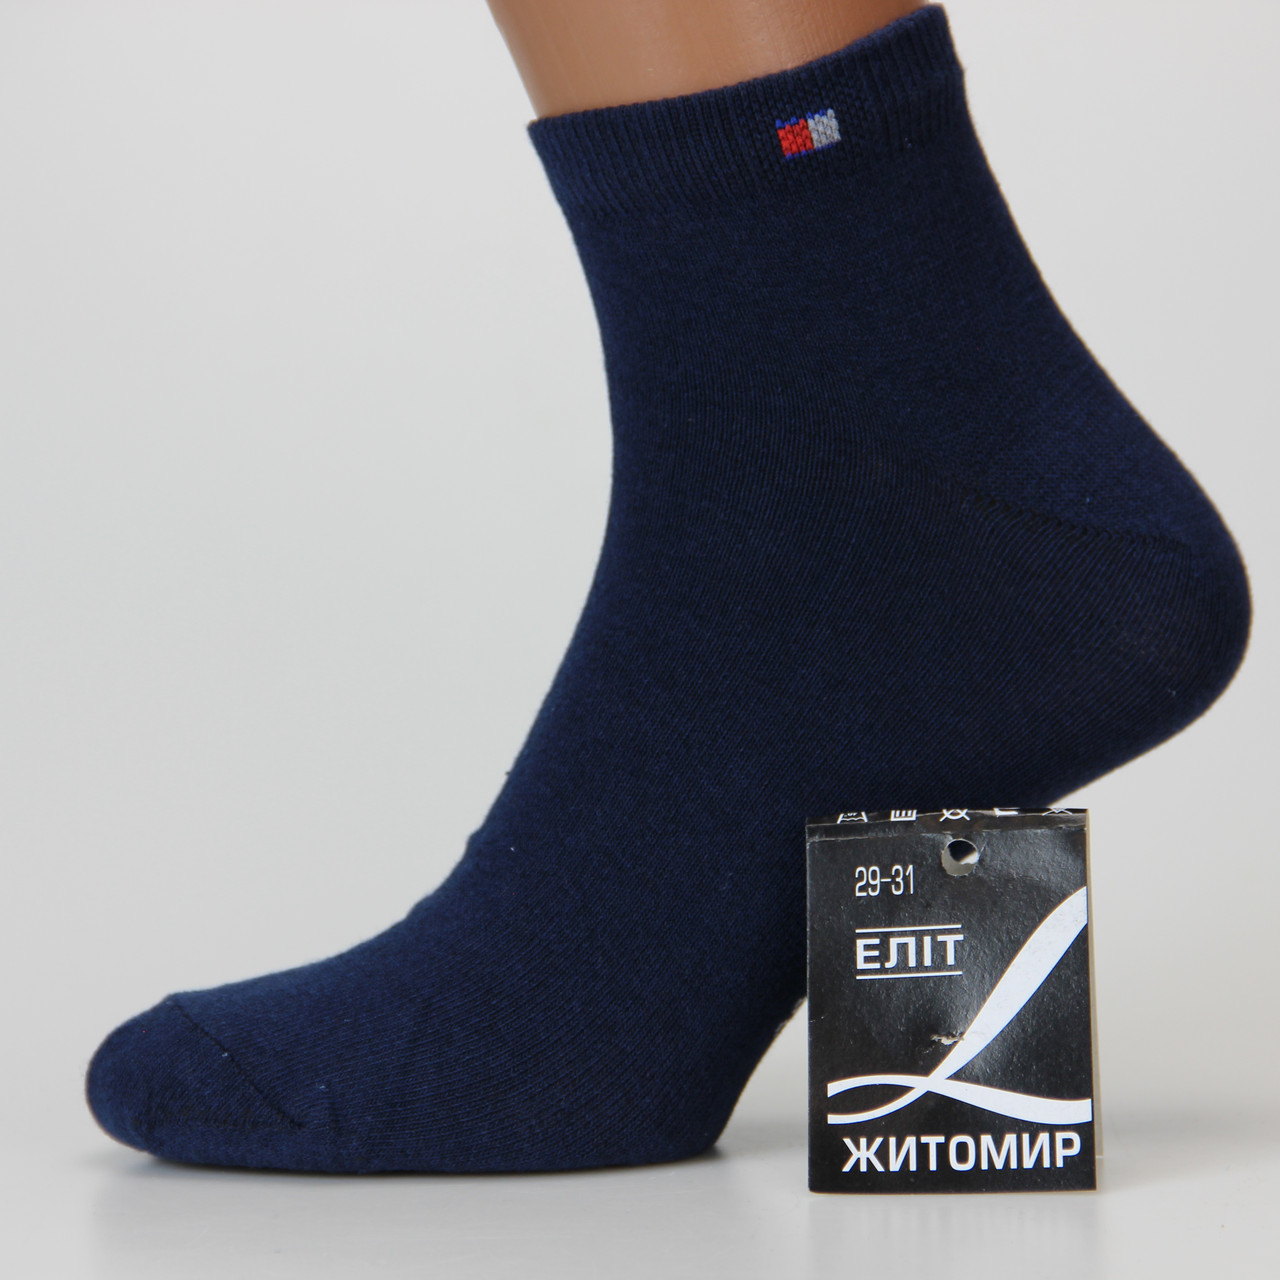 Шкарпетки чоловічі короткі демісезонні Житомир 29-31 розмір (43-46 взуття) спортивні темно-синій